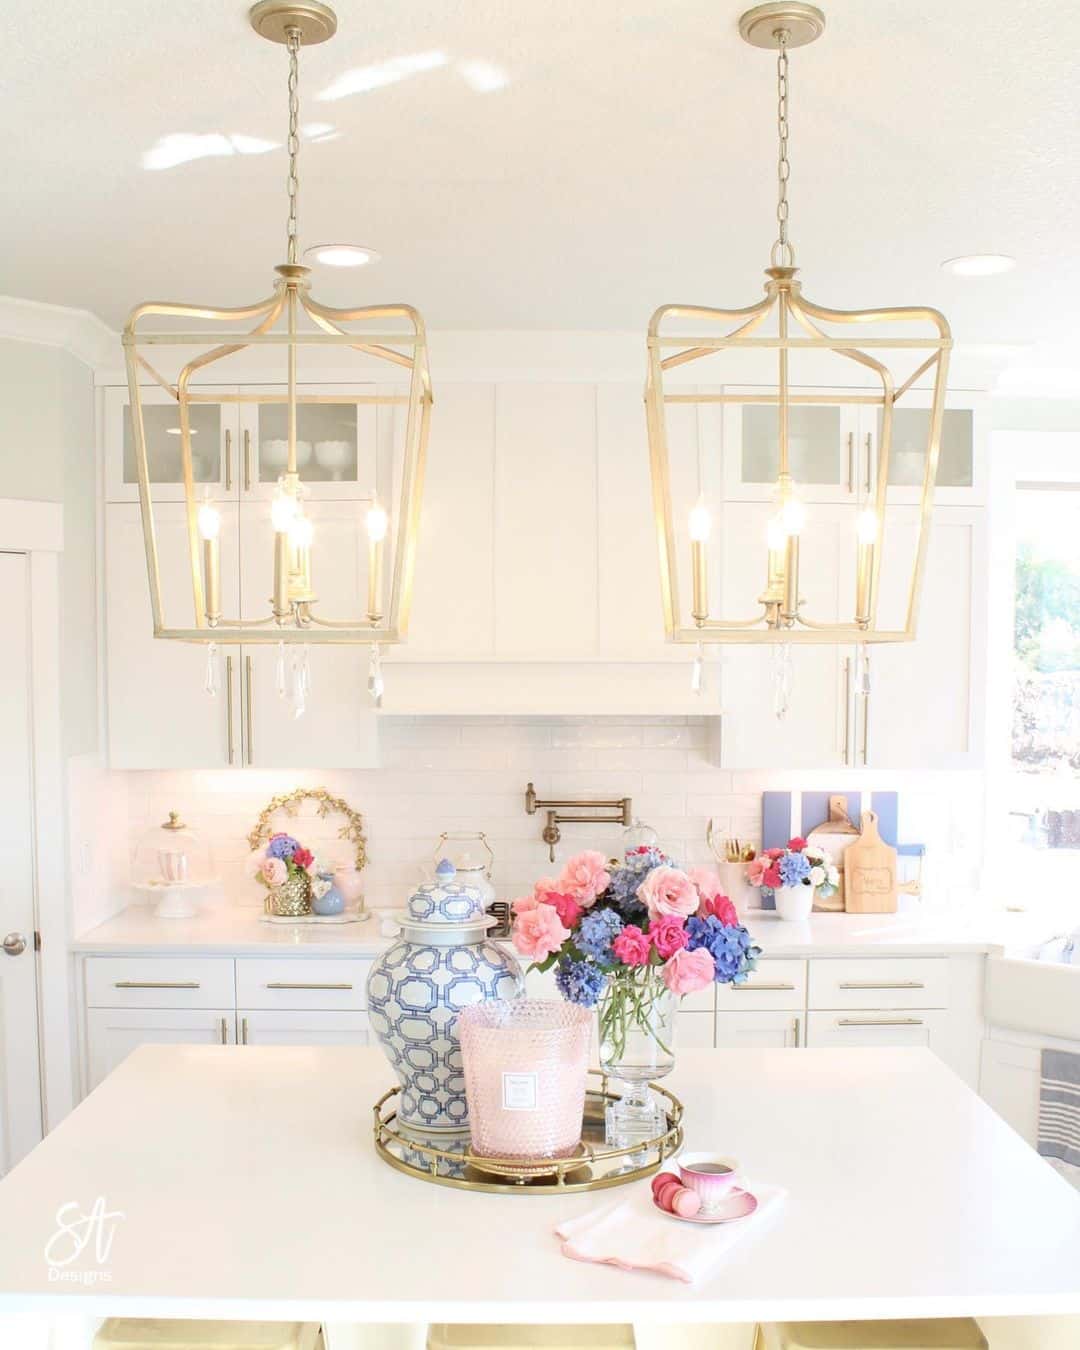 White Kitchen with Golden Lantern Lights